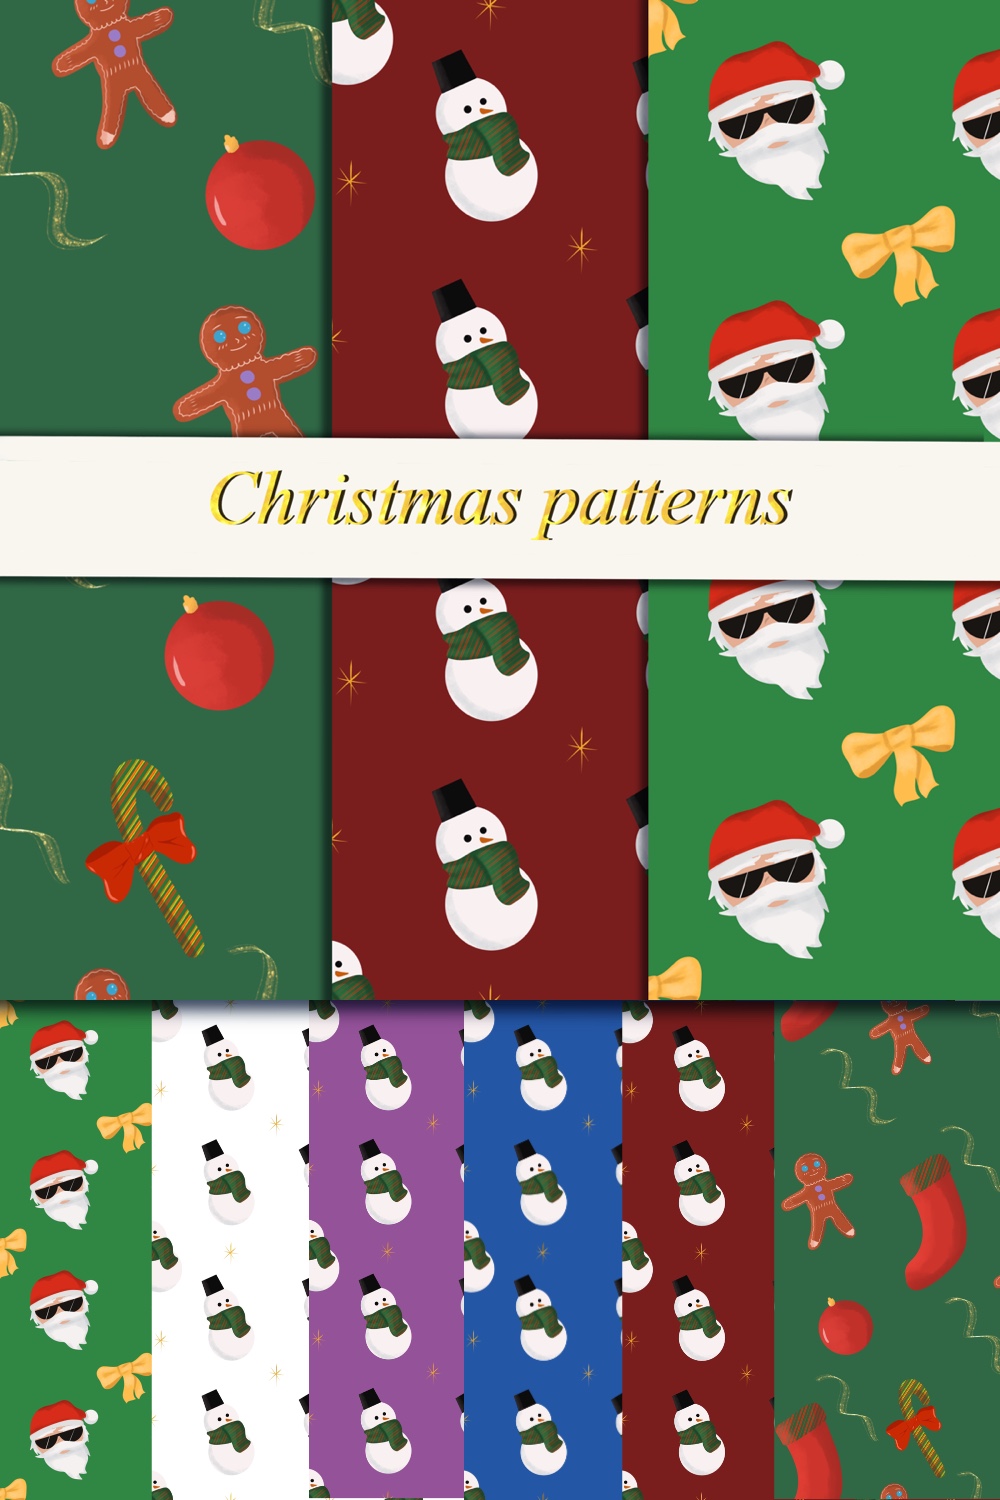 Christmas Snowman Claus Patterns Design pinterest image.